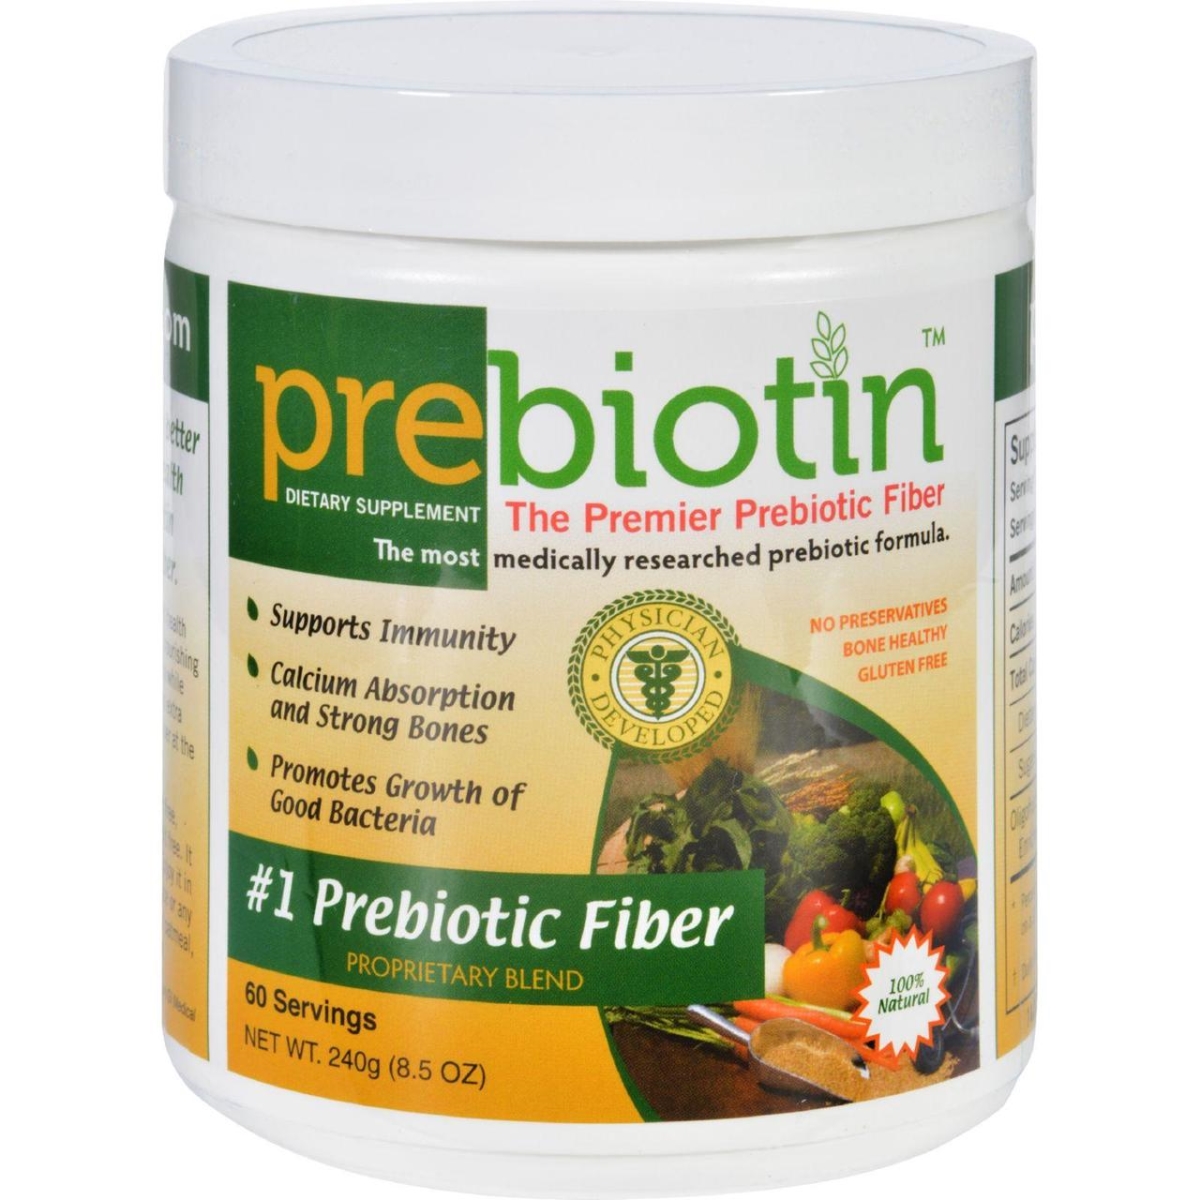 Picture of Prebiotin HG1614015 8.5 oz Prebiotic Fiber